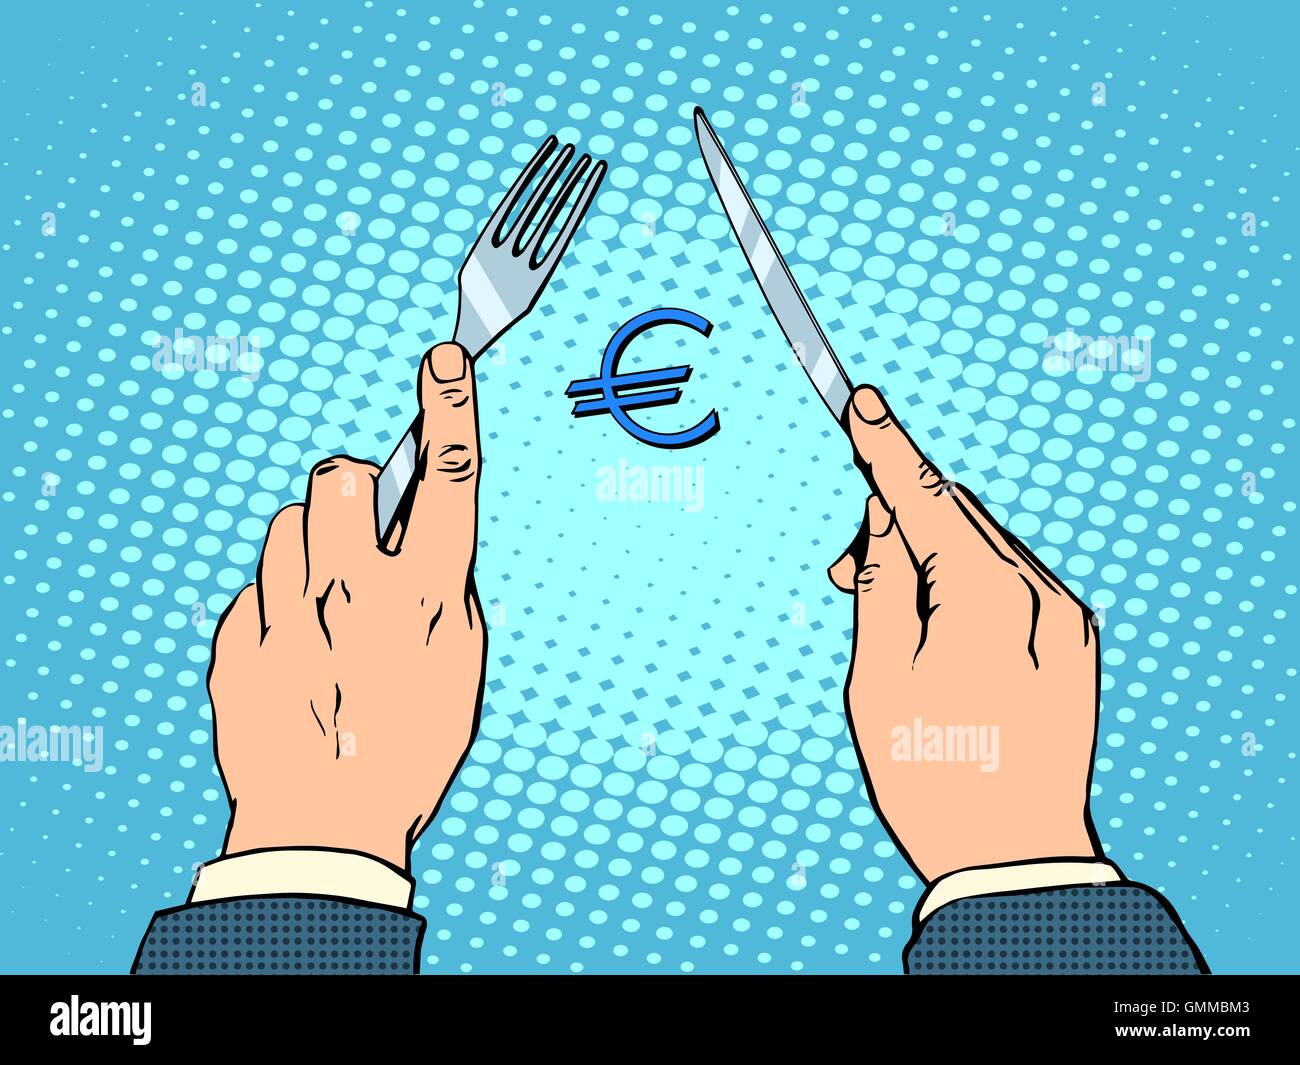 European Euro knife and fork financial concept Stock Vector